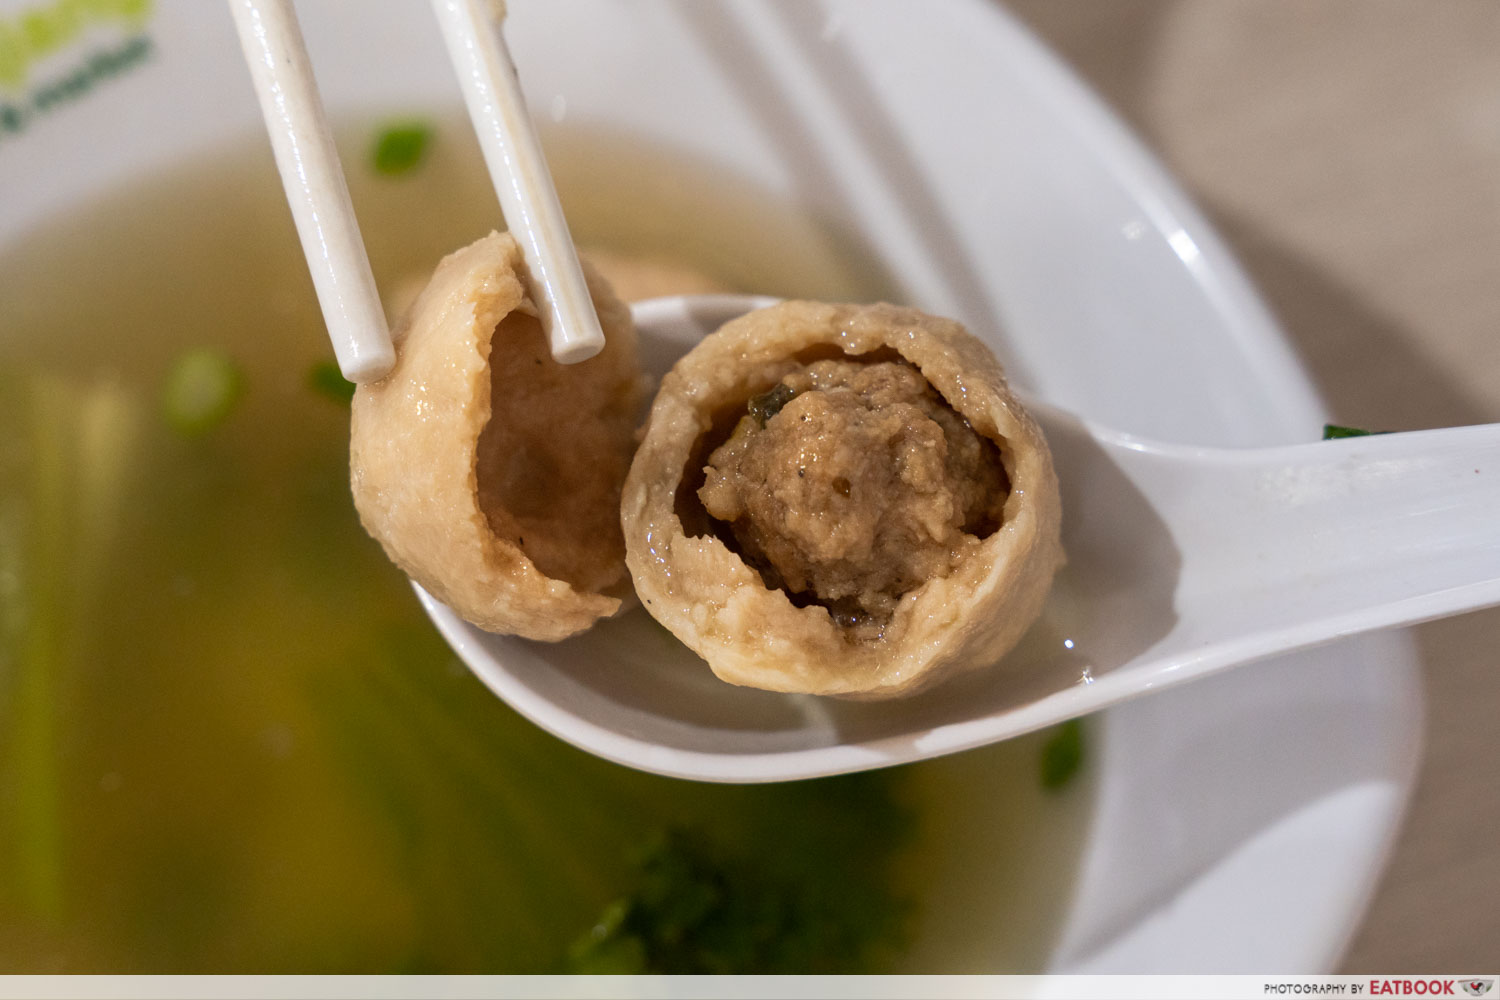 You-Xiang-Teochew-Noodles-Taiwan-Meatball